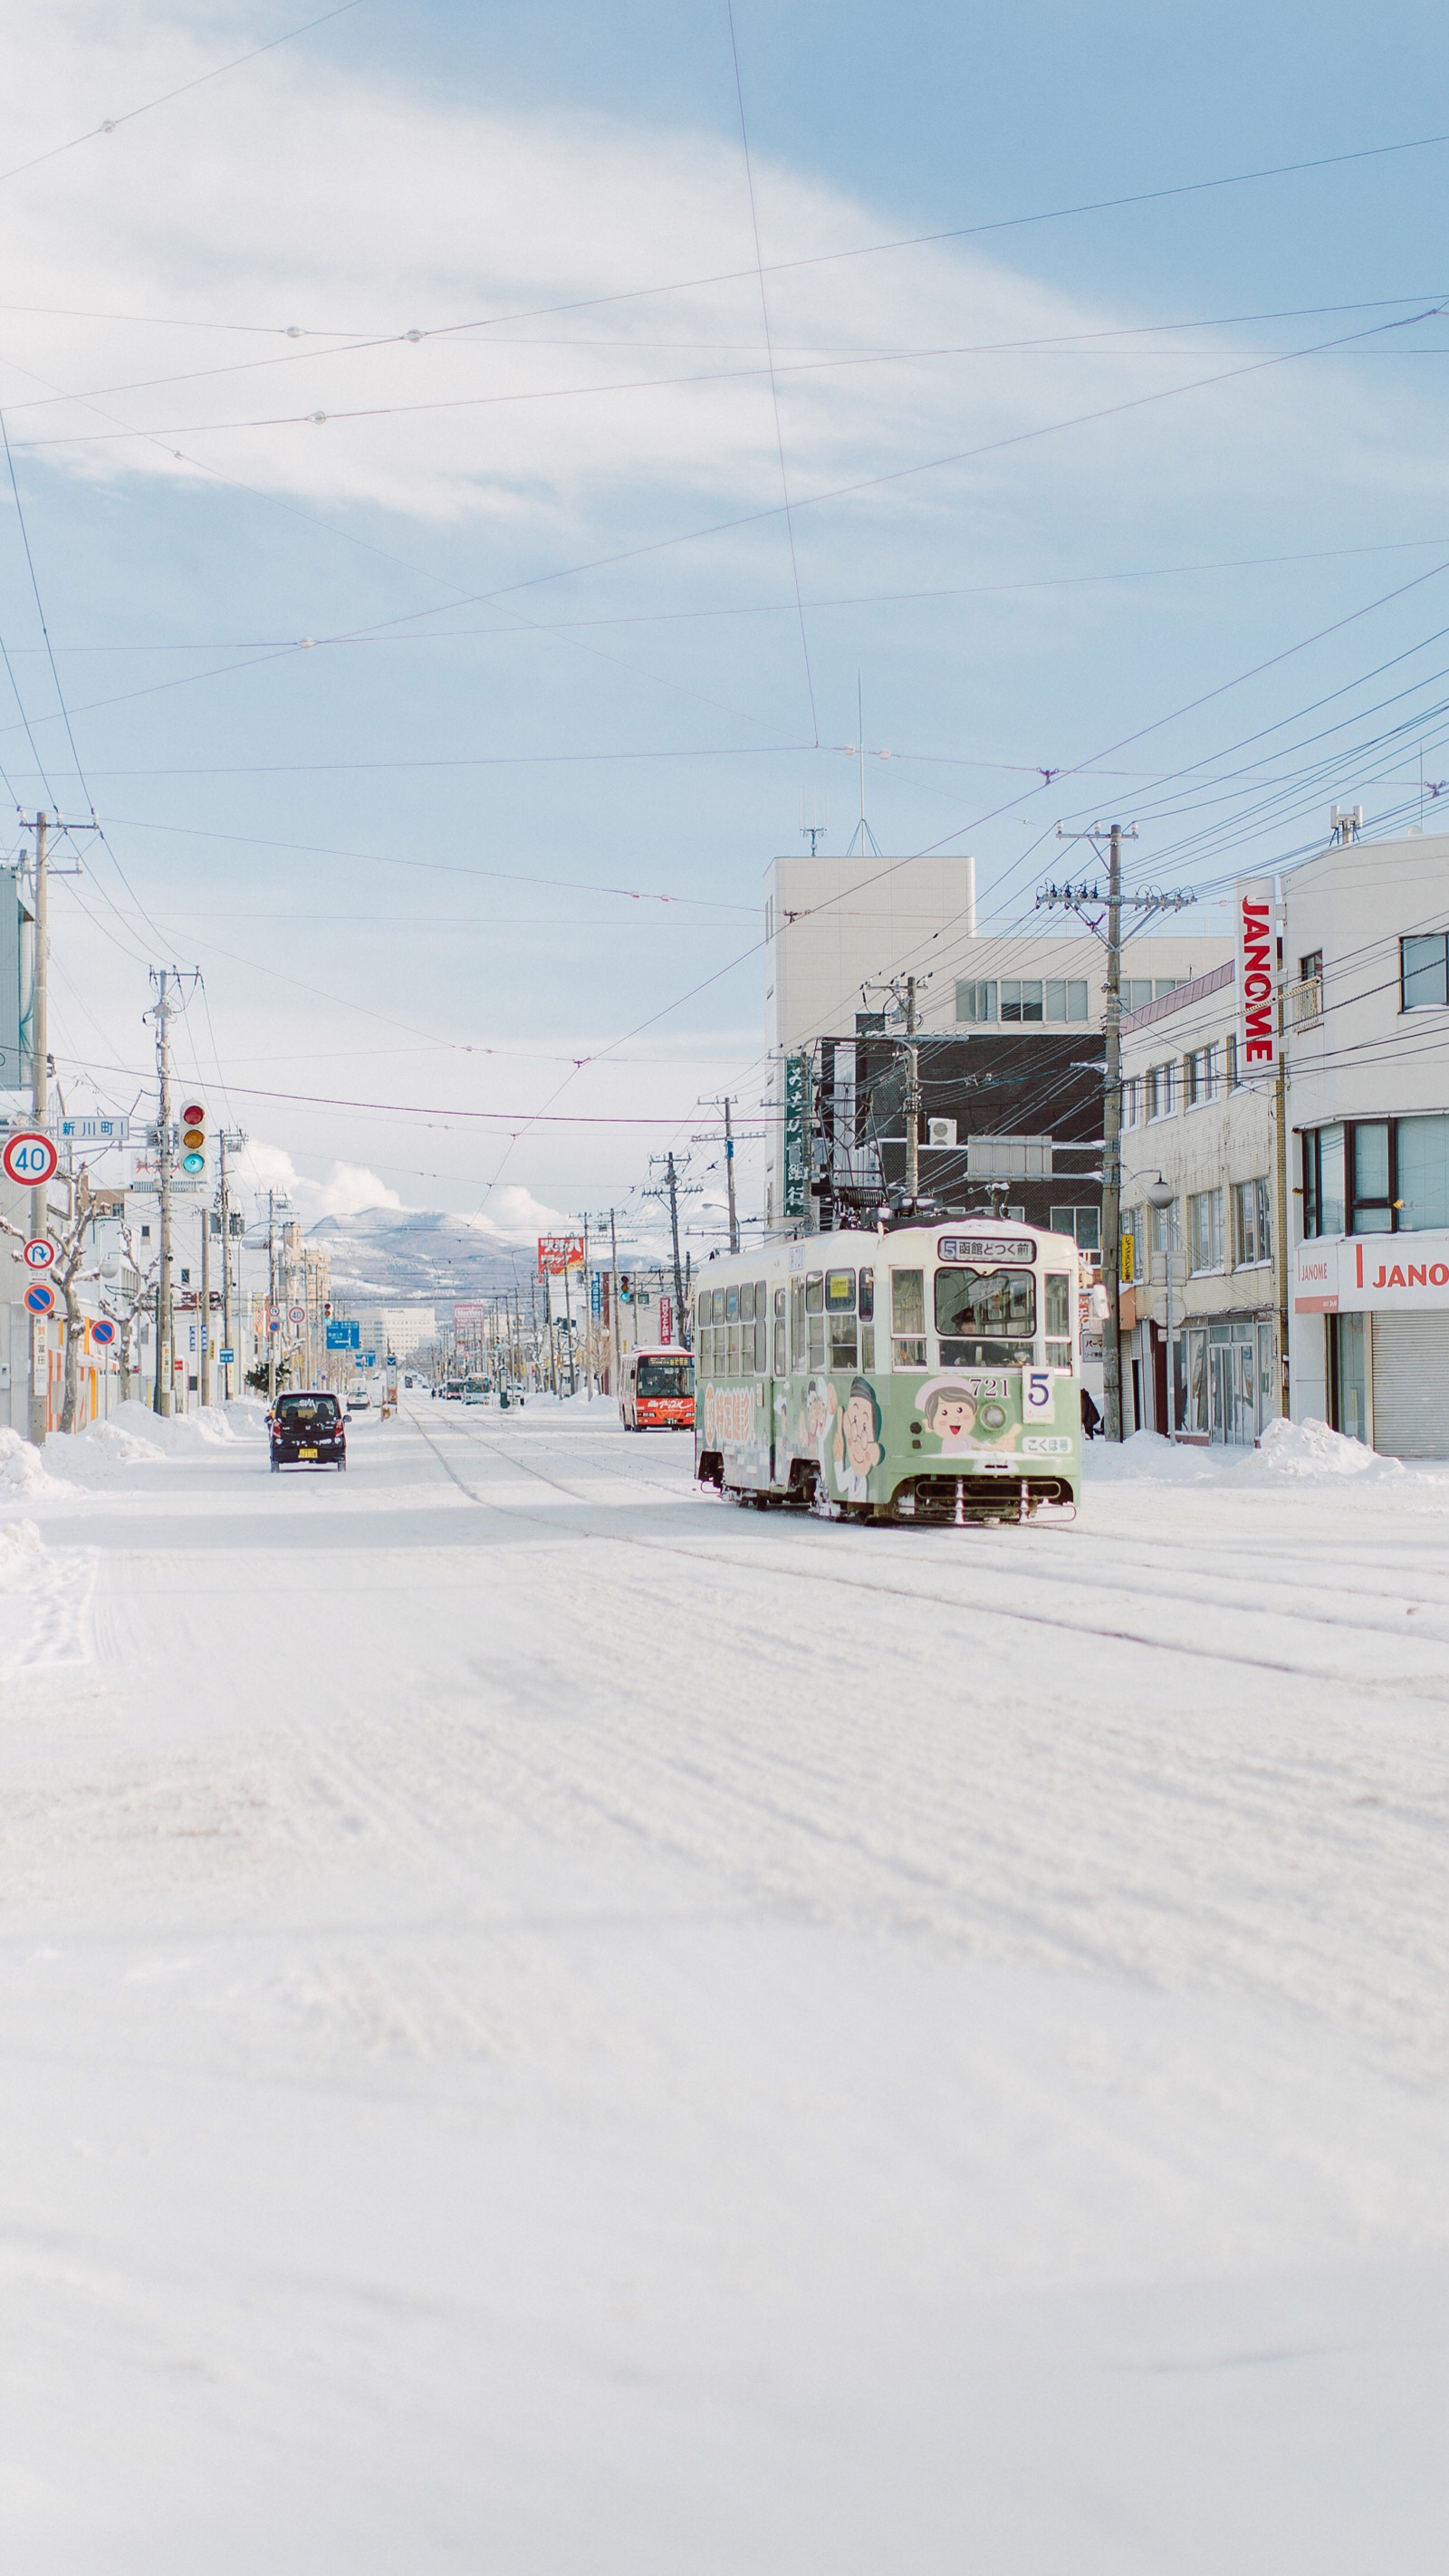 北海道雪景高清壁纸 堆糖 美图壁纸兴趣社区